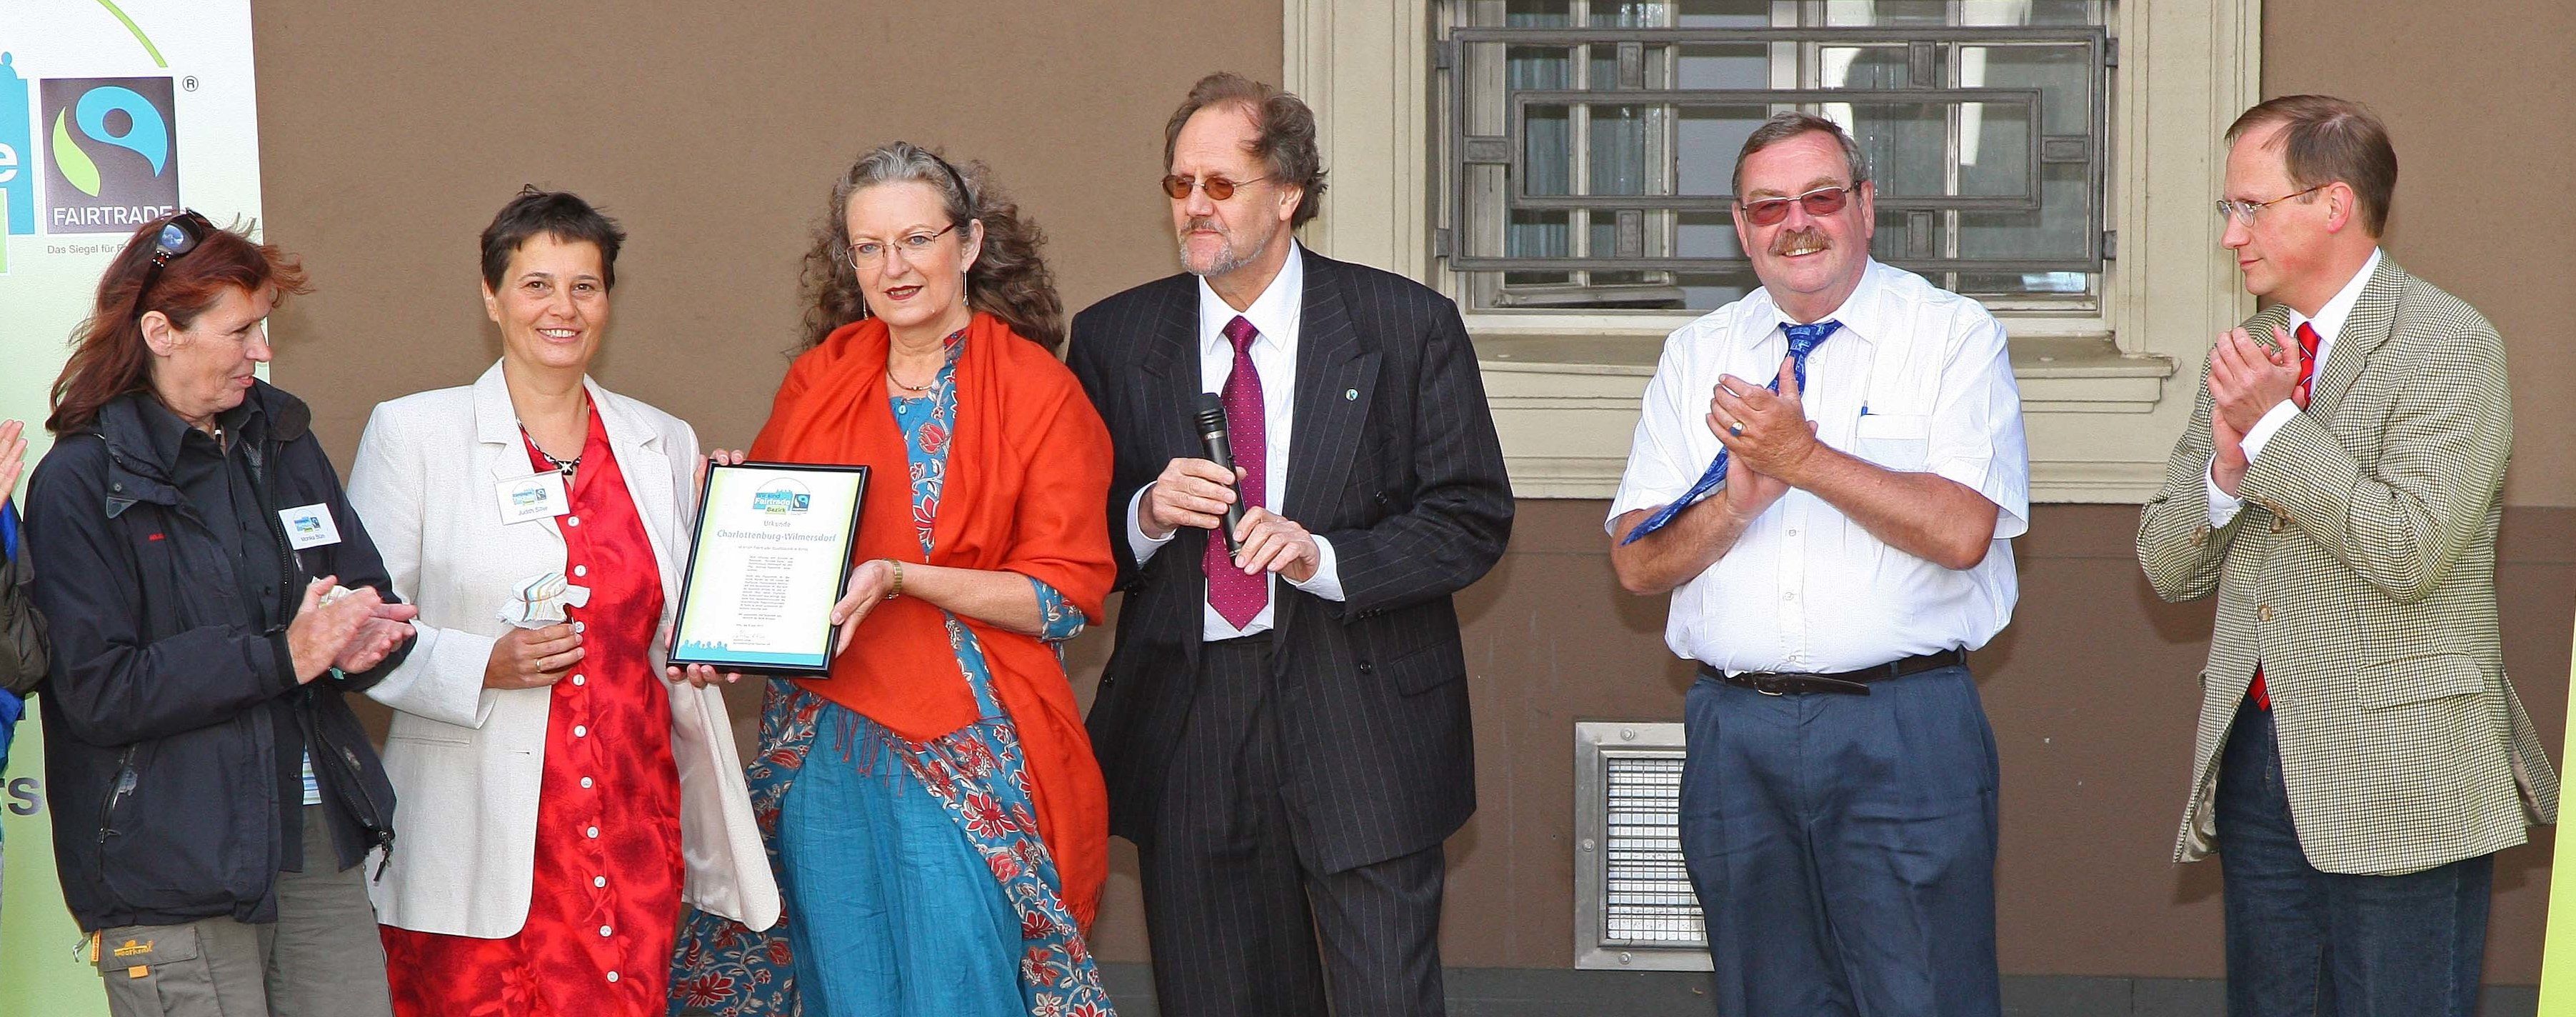 Entgegennahme der verliehenen Auszeichnung "Fairtrade-Town" durch Bezirksbürgermeisterin a. D. Monika Thiemen